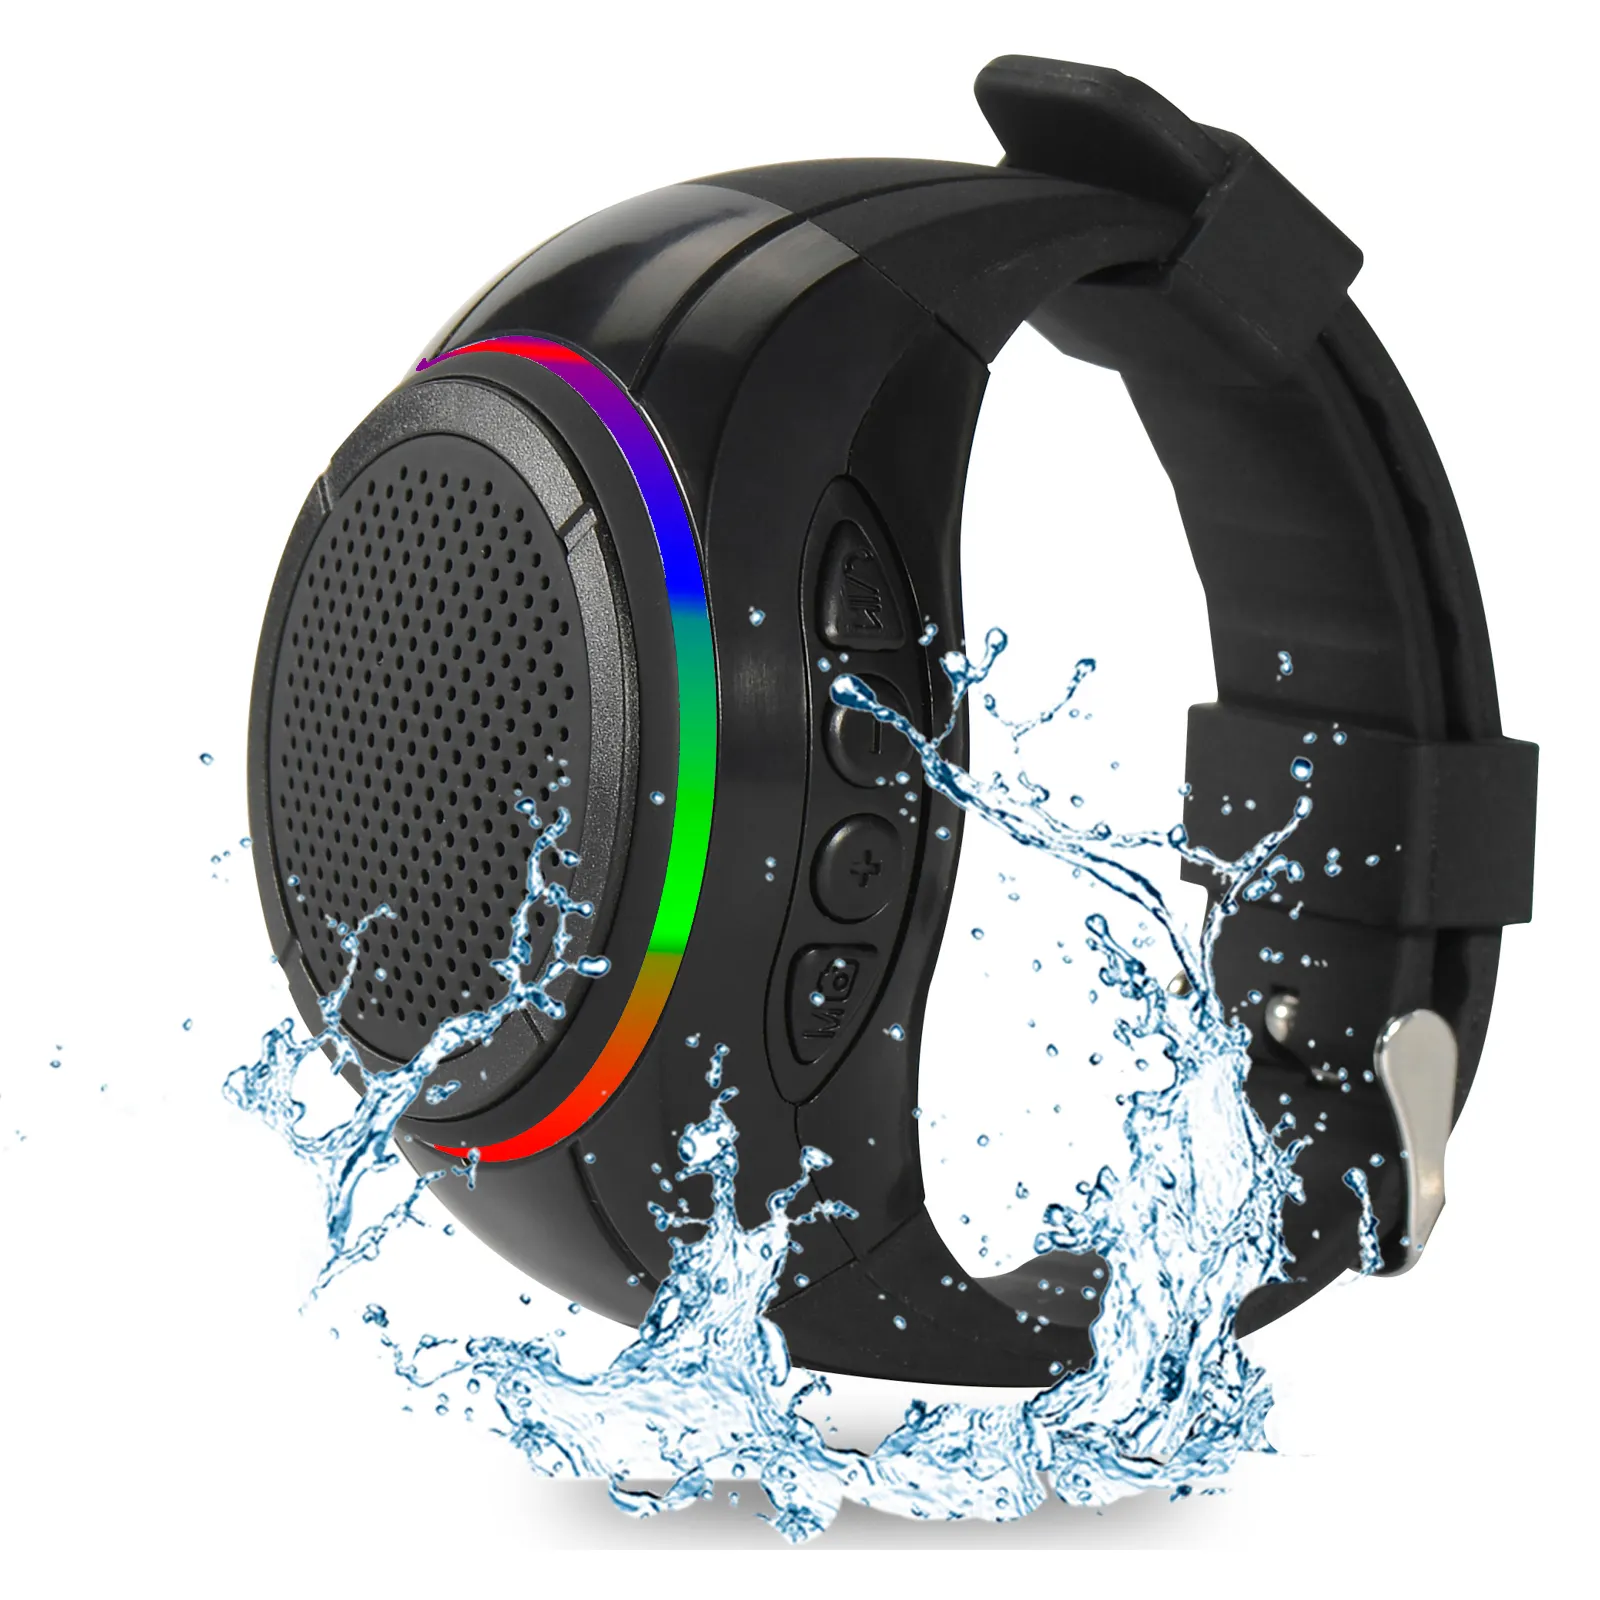 Frewico X10 orologio altoparlante bluetooth portatile indossabile impermeabile con controllo vocale TWS + LED lampeggiante + lettore musicale MP3 + microfono